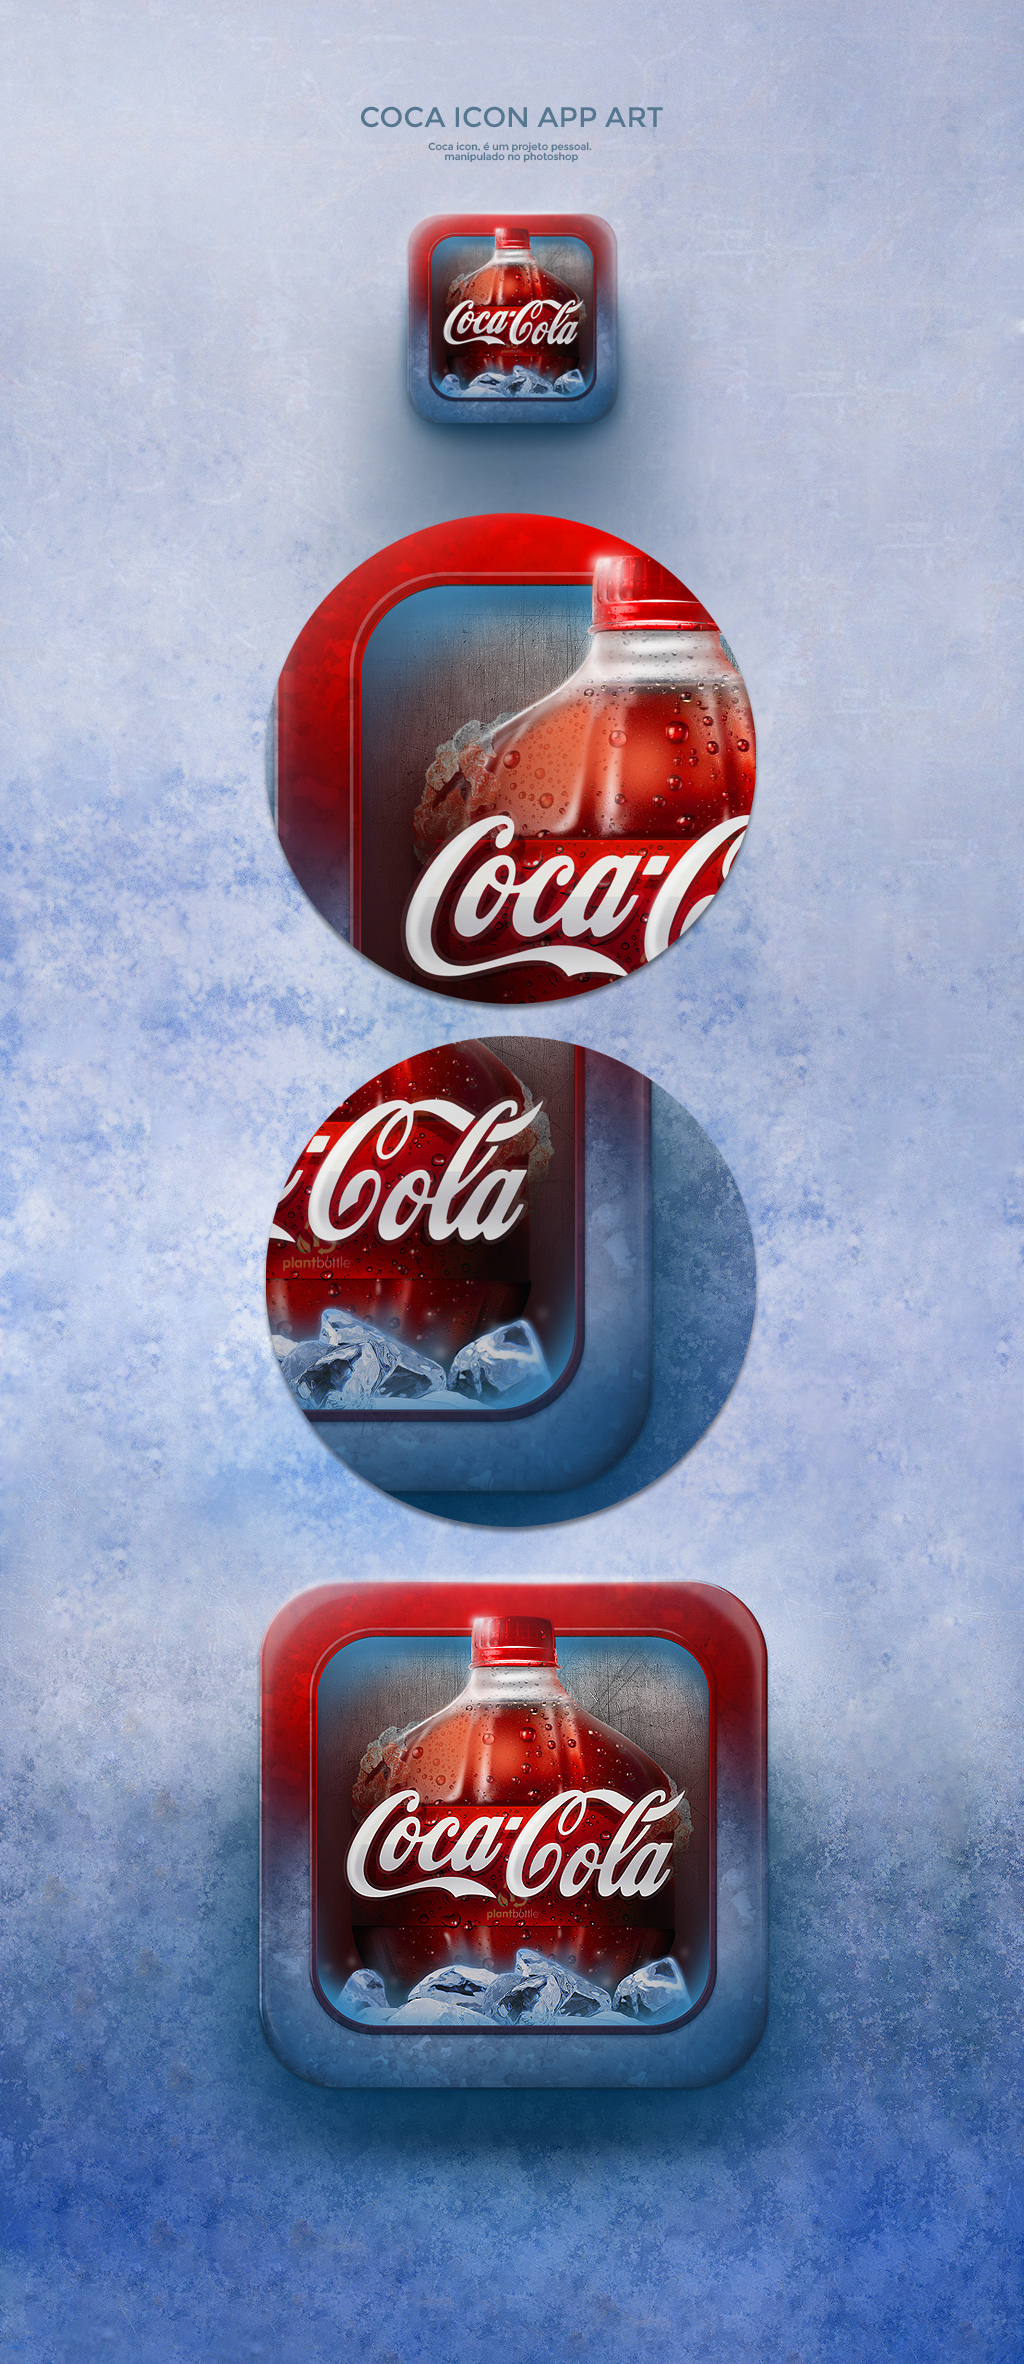 Coca-Cola icone PhotoshopArt arte digital arte digitale design gráfico Digital Art  digitalart imagem manipulation Manipulação de imagem